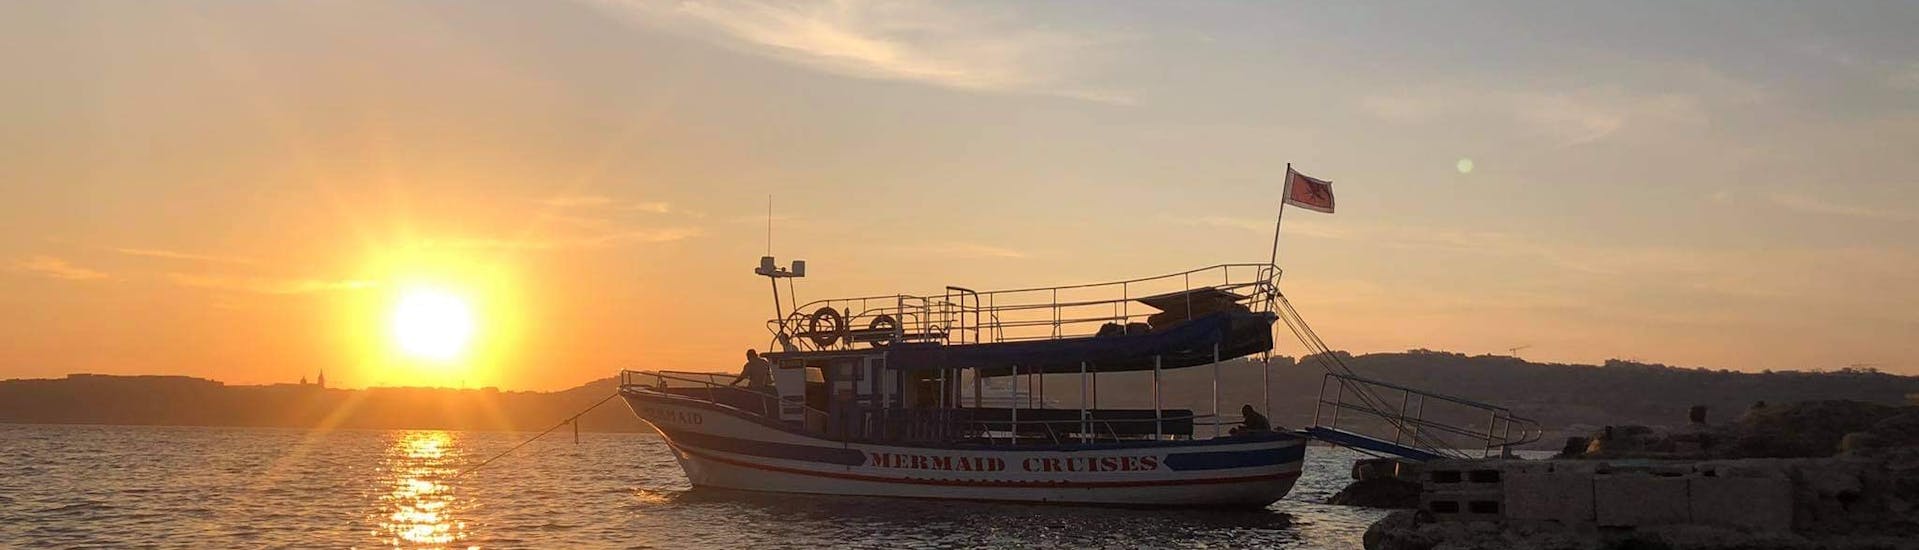 Unser Boot über dem Wasser in der Mitte des Sonnenuntergangs während der Sunset Cruise zur Blauen Lagune auf Comino mit Mermaid Cruises Malta.